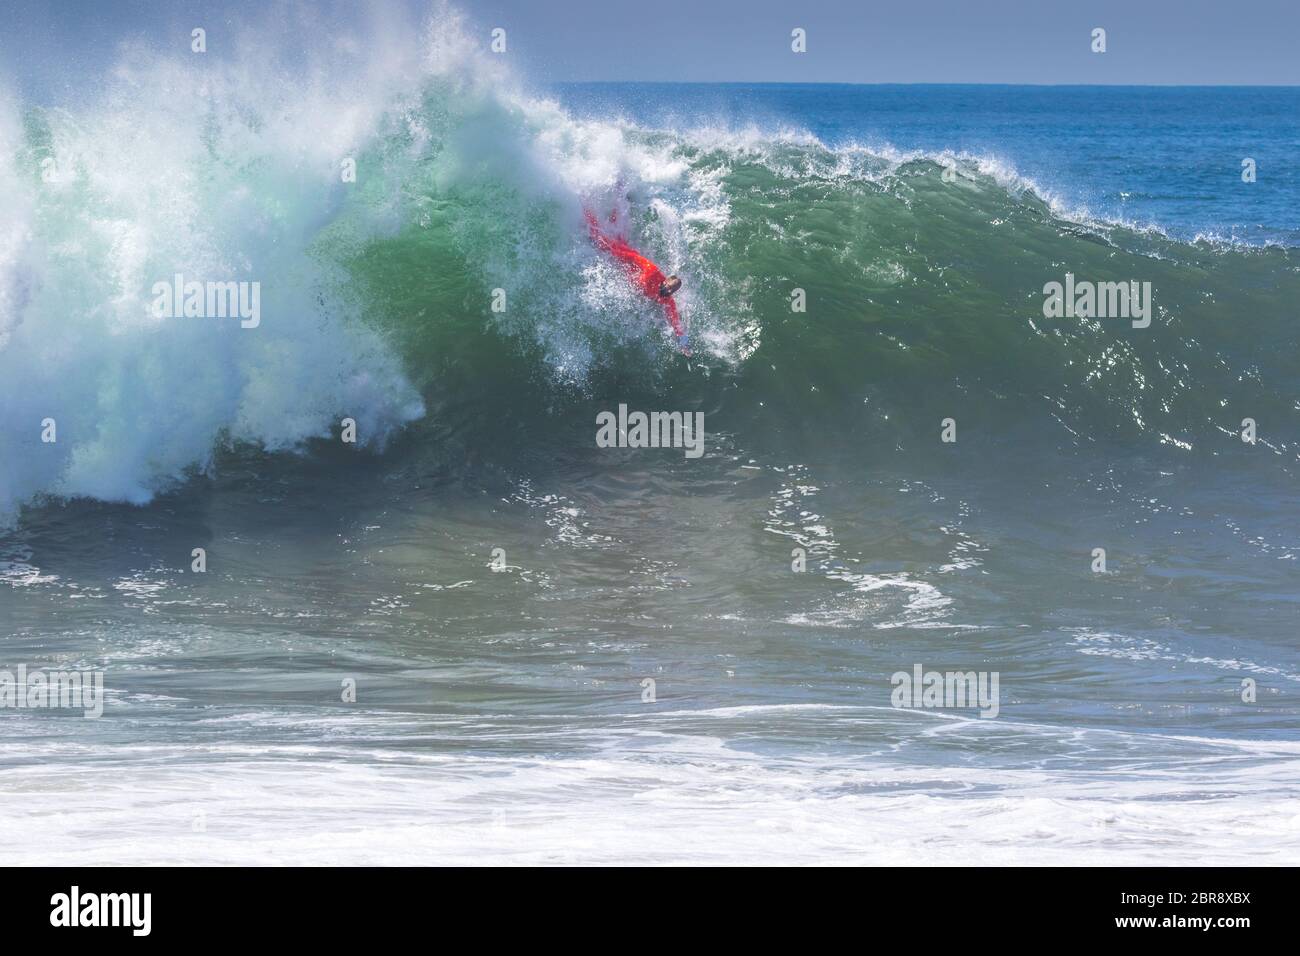 Bodysurfer cavalcare un'onda nella famosa località di bodysurfing The Wedge a Newport Beach, California meridionale Foto Stock